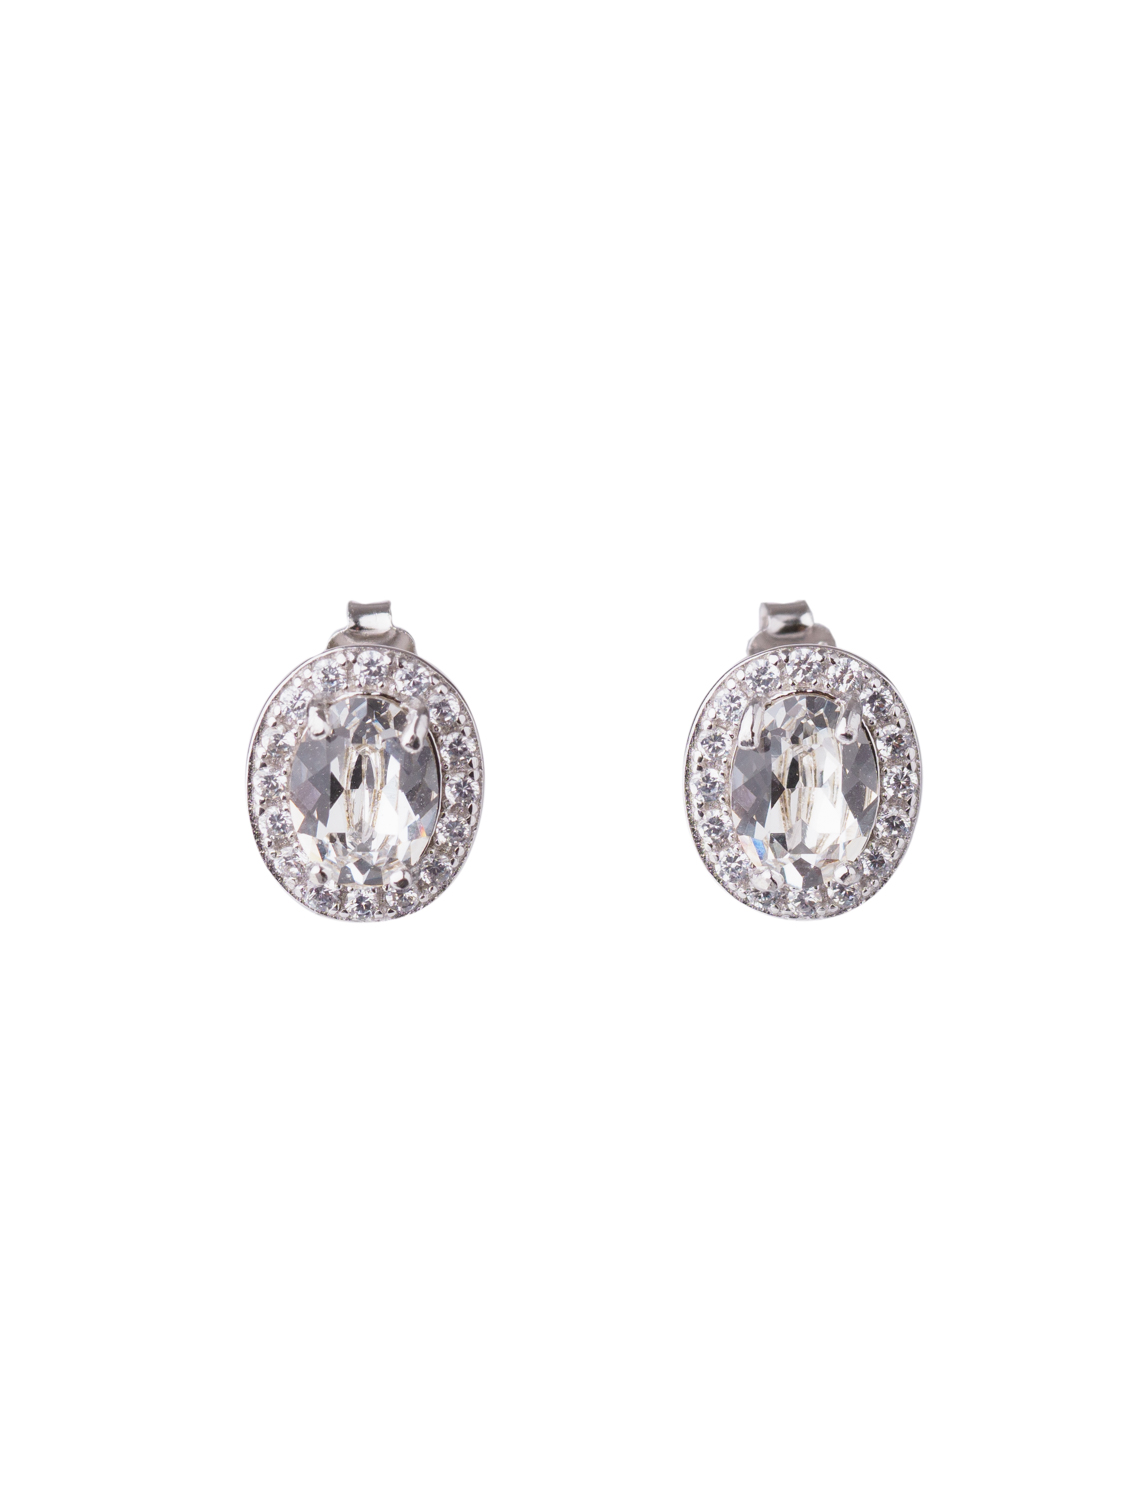 Oval Crystal Silver Earrings